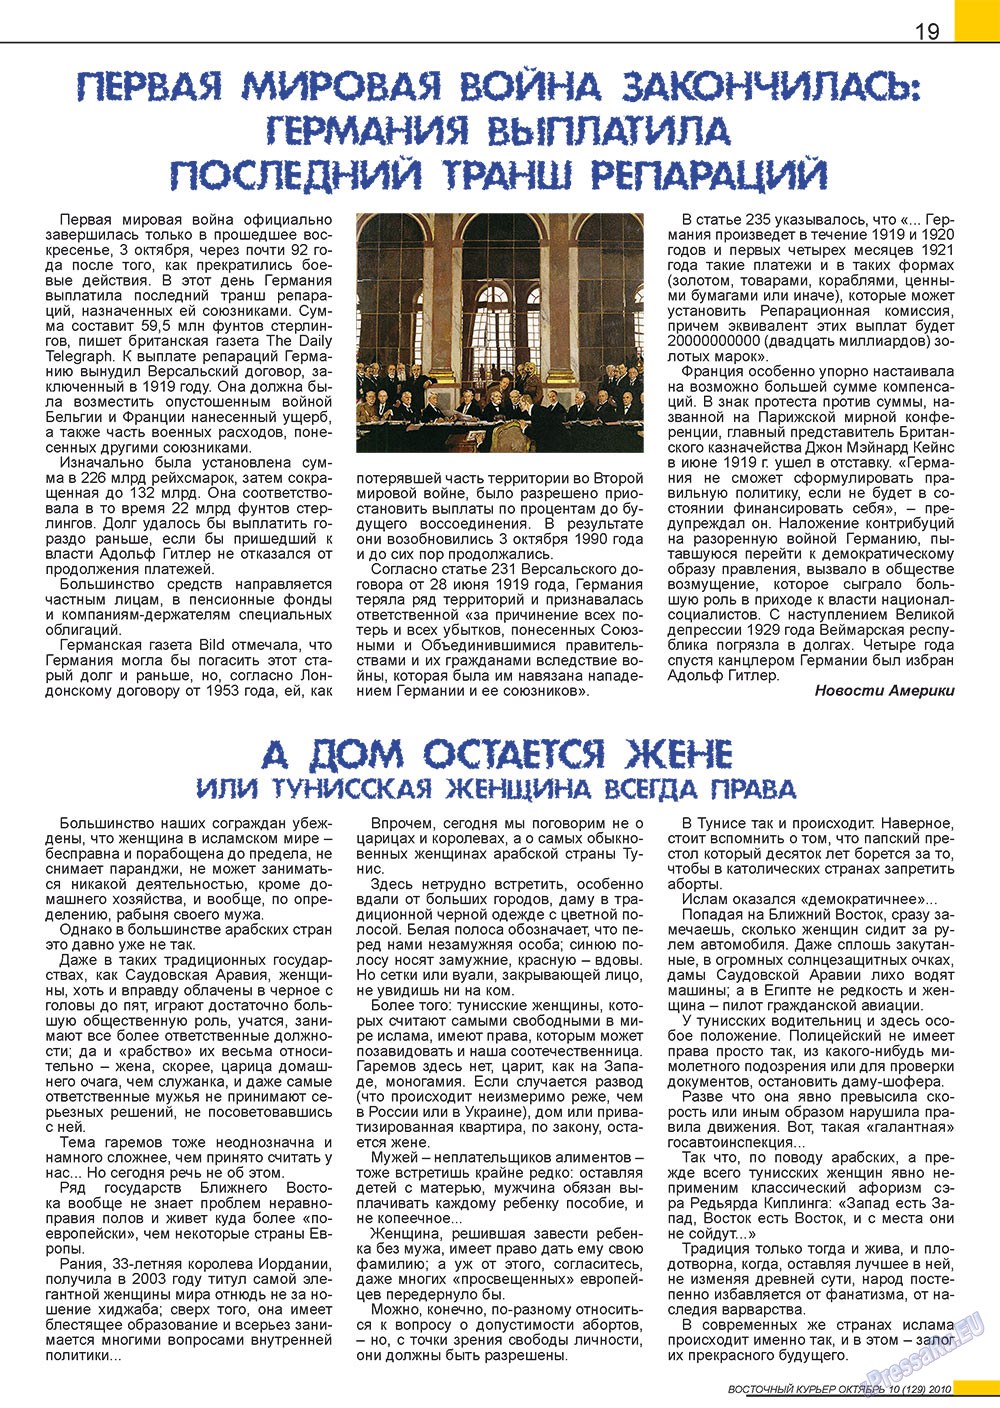 Восточный курьер (журнал). 2010 год, номер 10, стр. 19